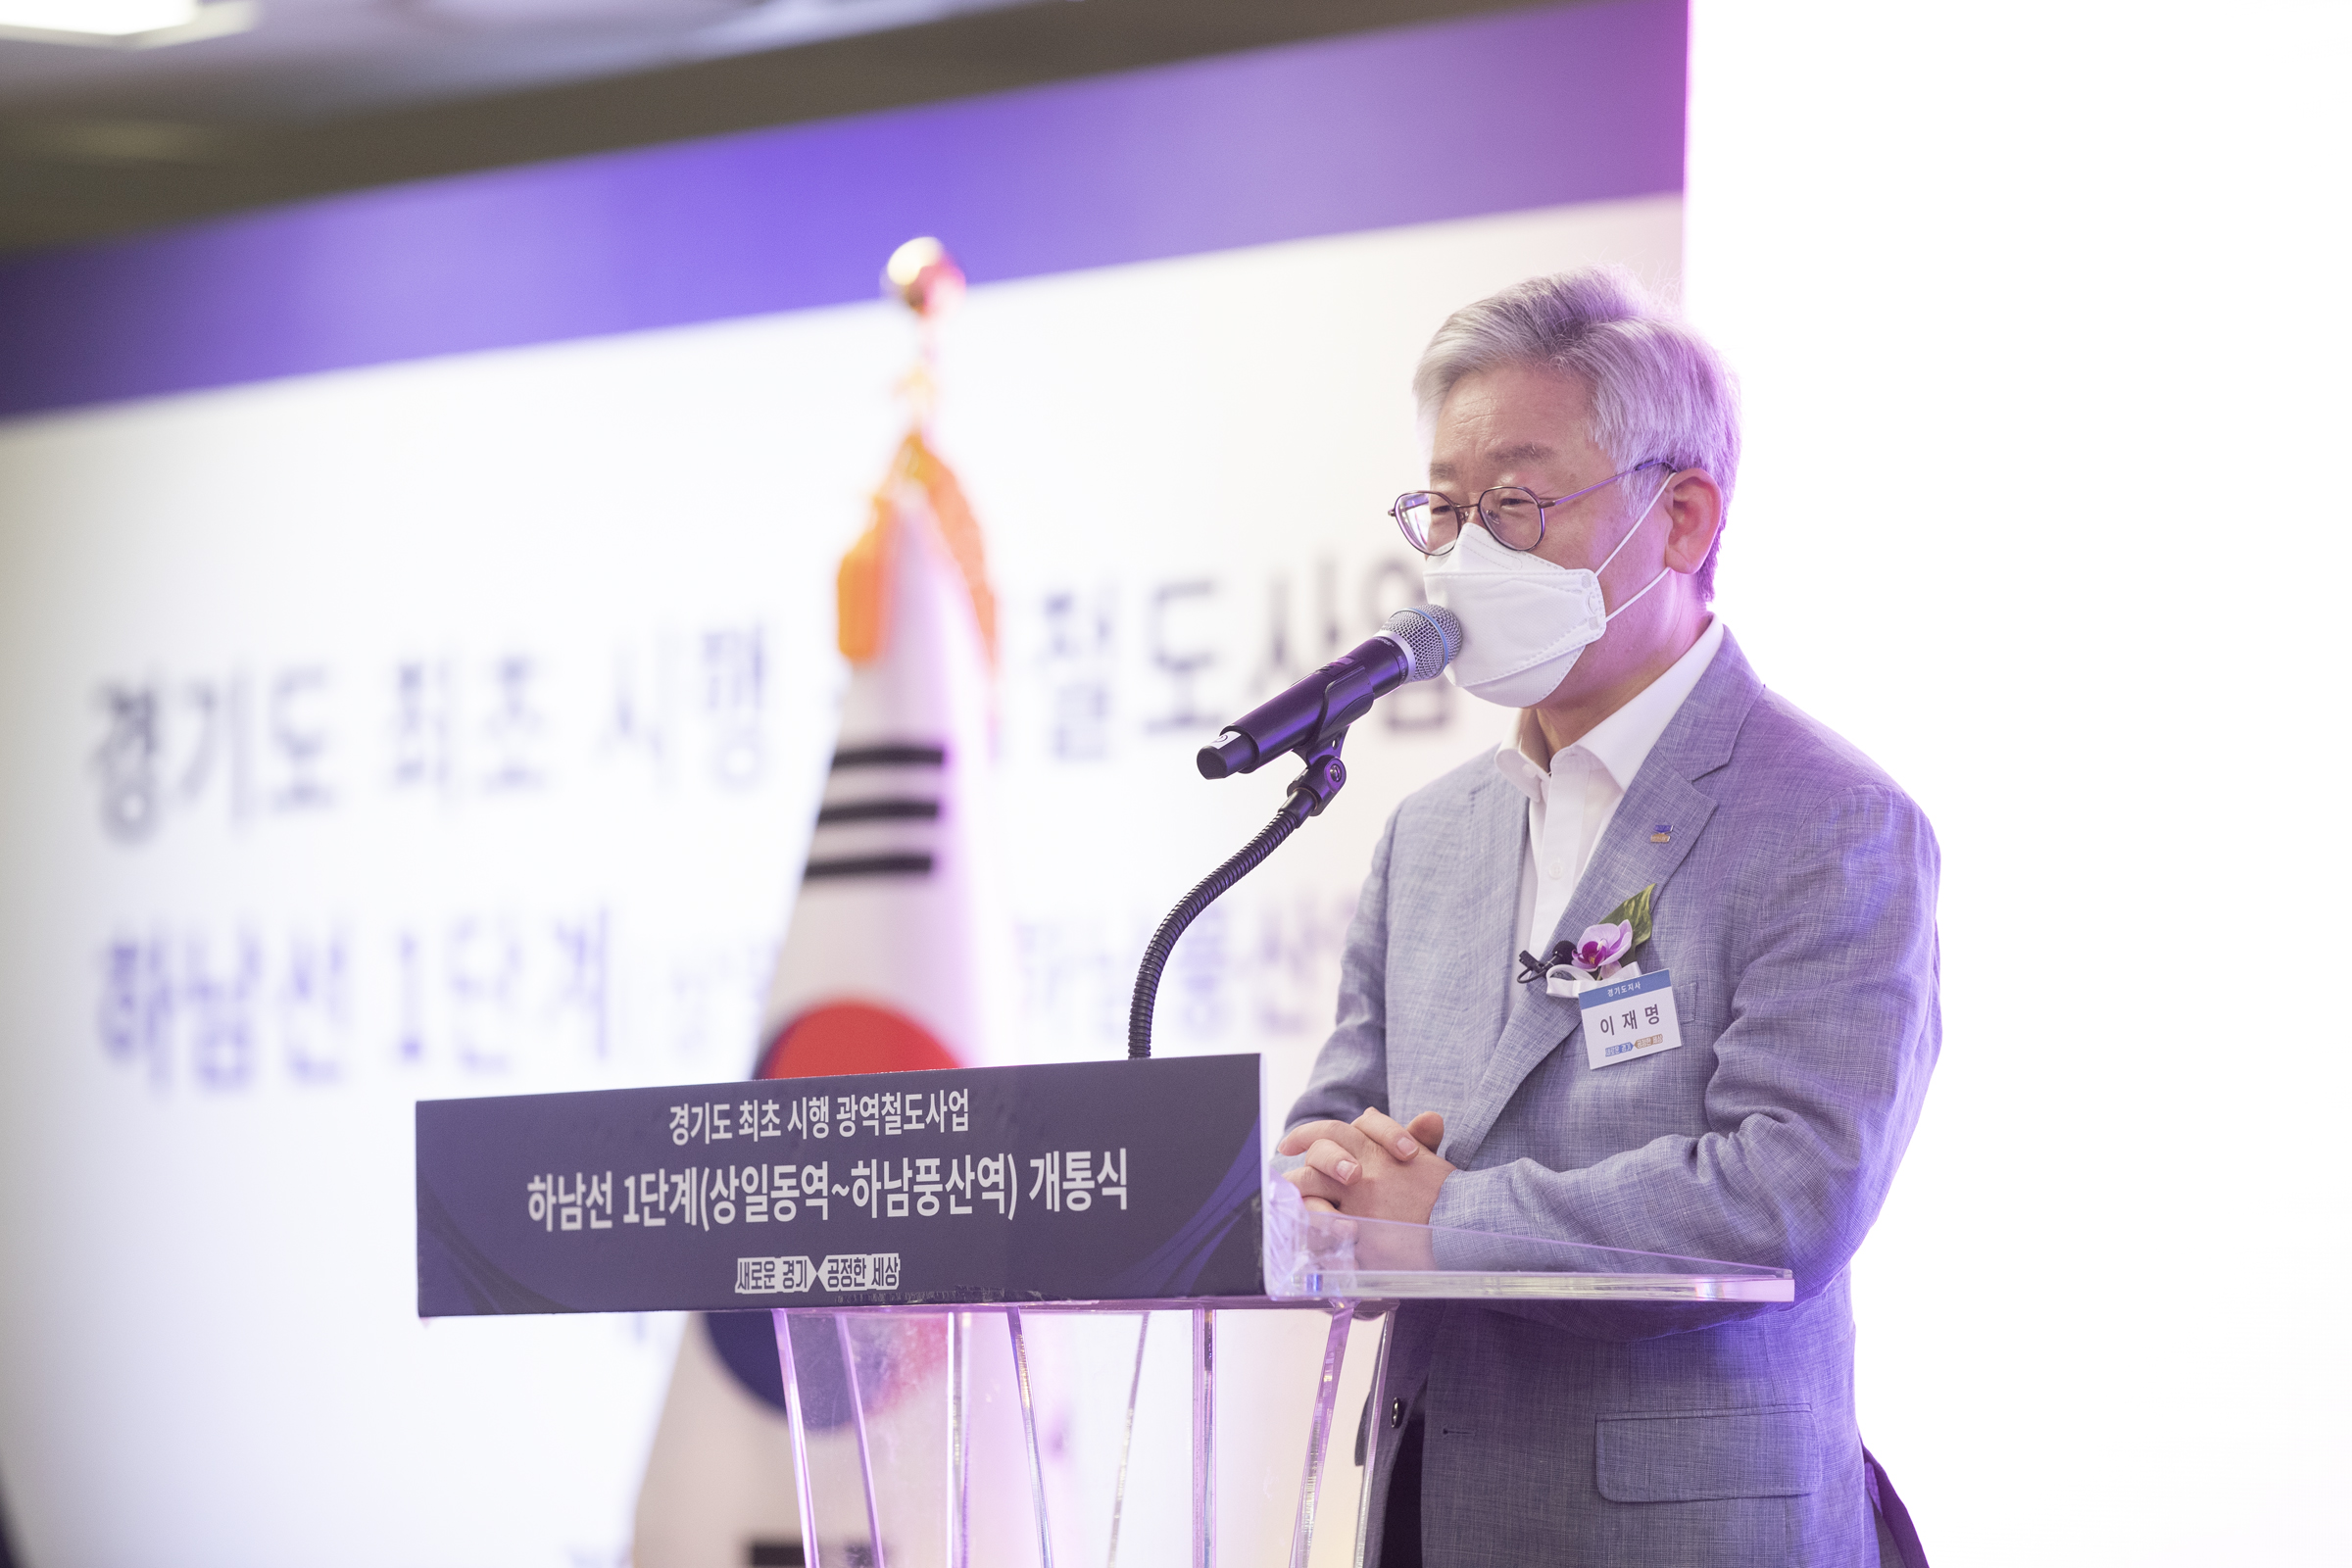 이재명 지사는 “경기도는 앞으로도 철도망 등 광역 교통 인프라 확충에 많은 노력을 기울일 것”이라며 “이를 위해 서울, 인천과 적극 협력해 나가겠다”고 밝혔다.